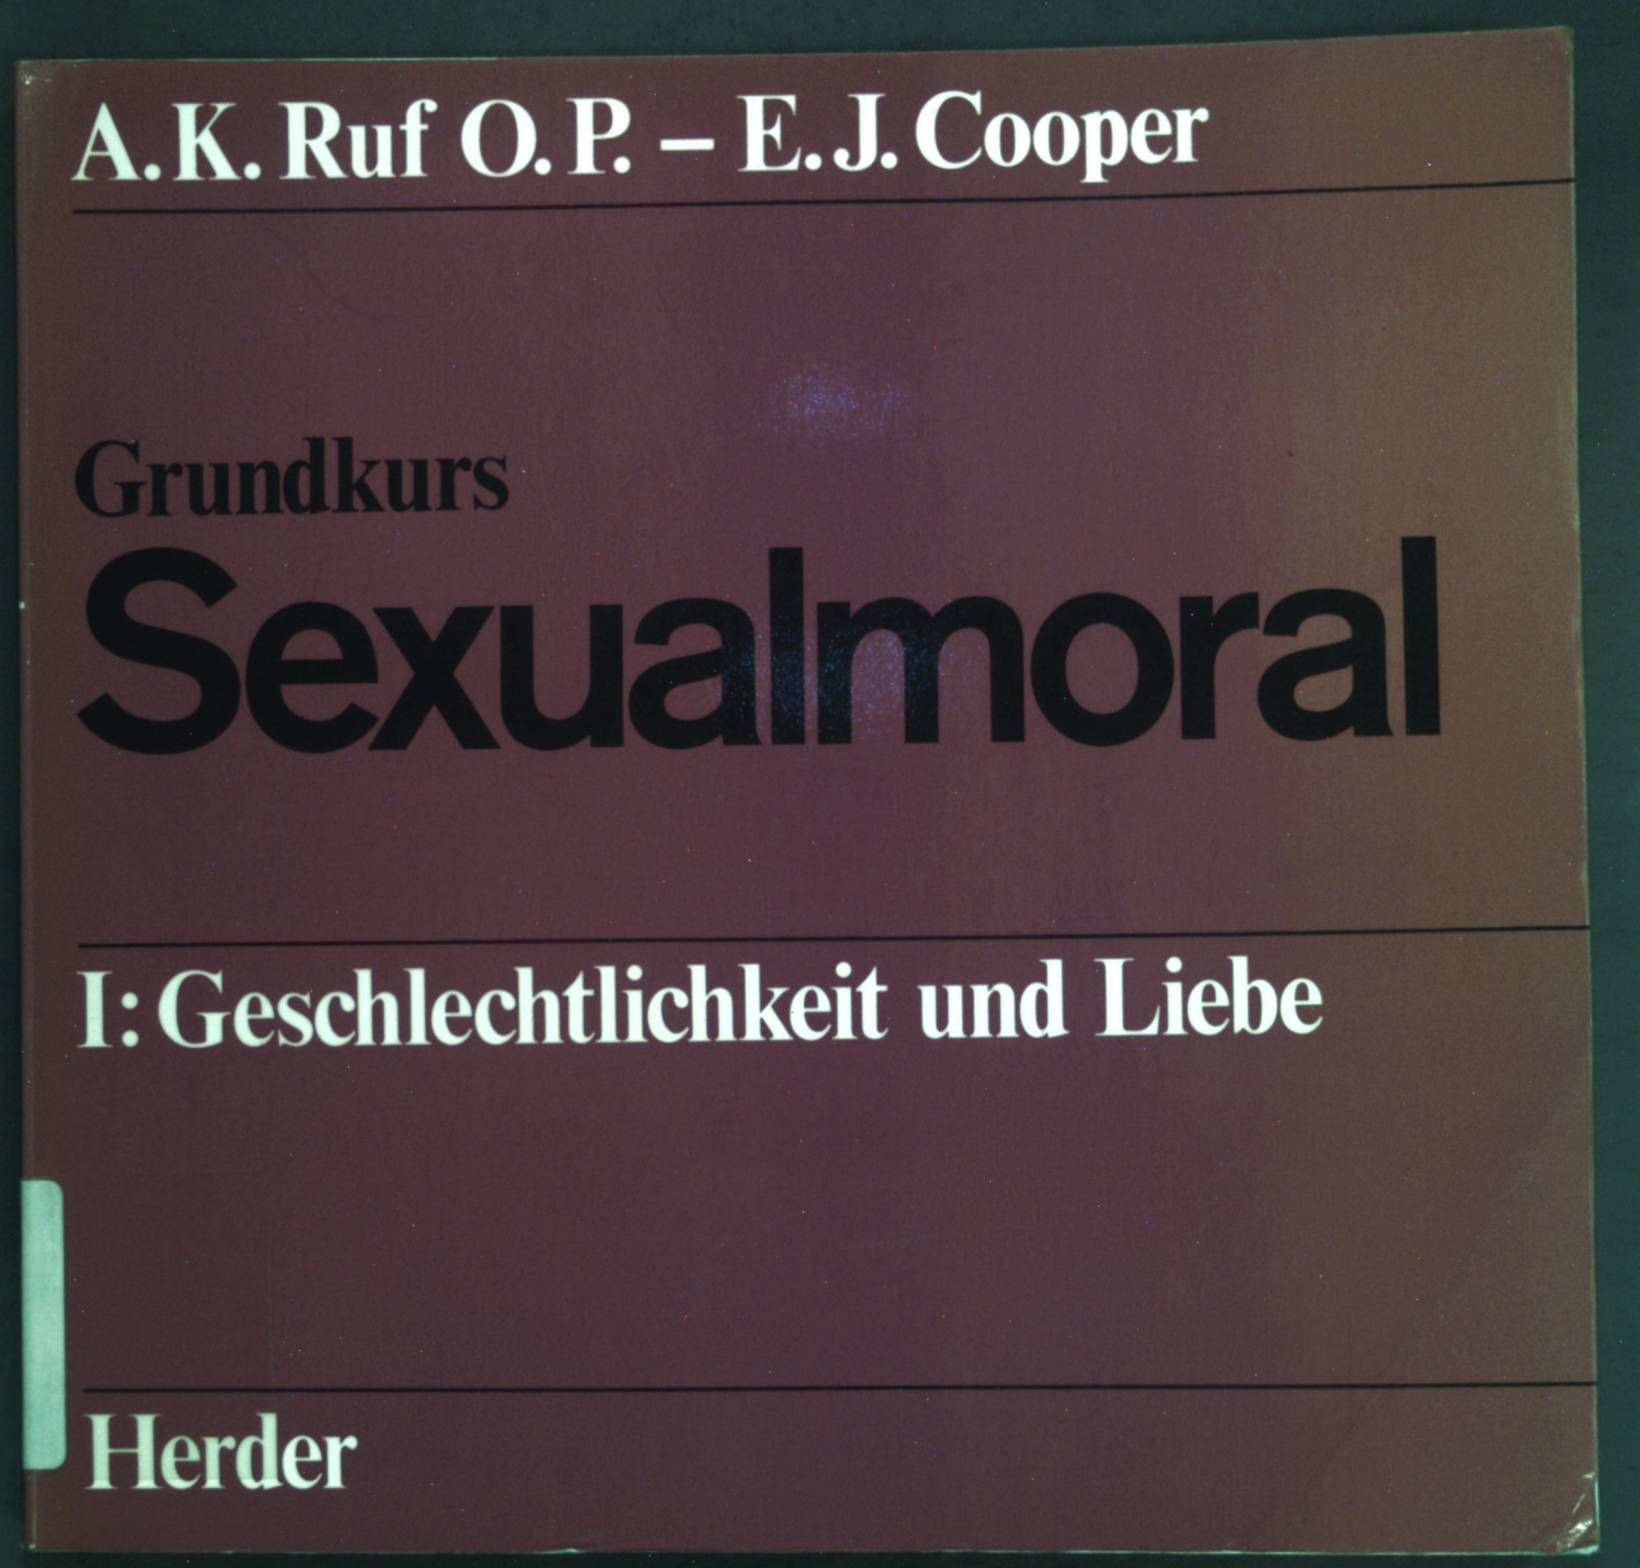 Grundkurs Sexualmoral I: Geschlechtlichkeit und Liebe - Ruf, A. K. und E. J. Cooper